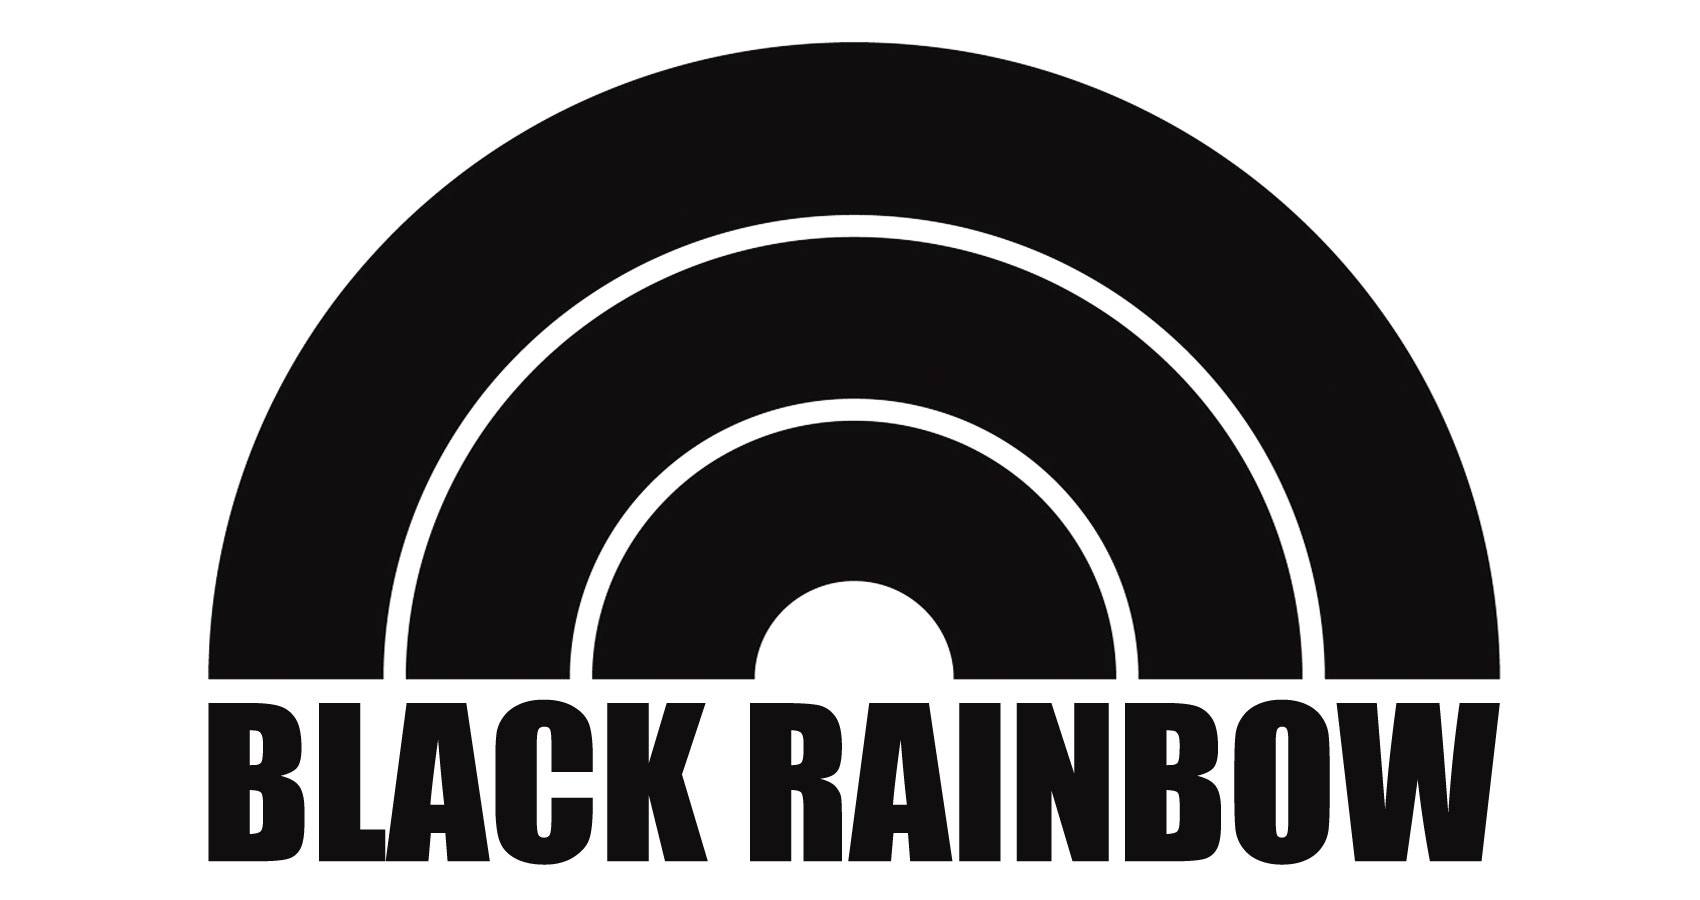 Black Rainbow